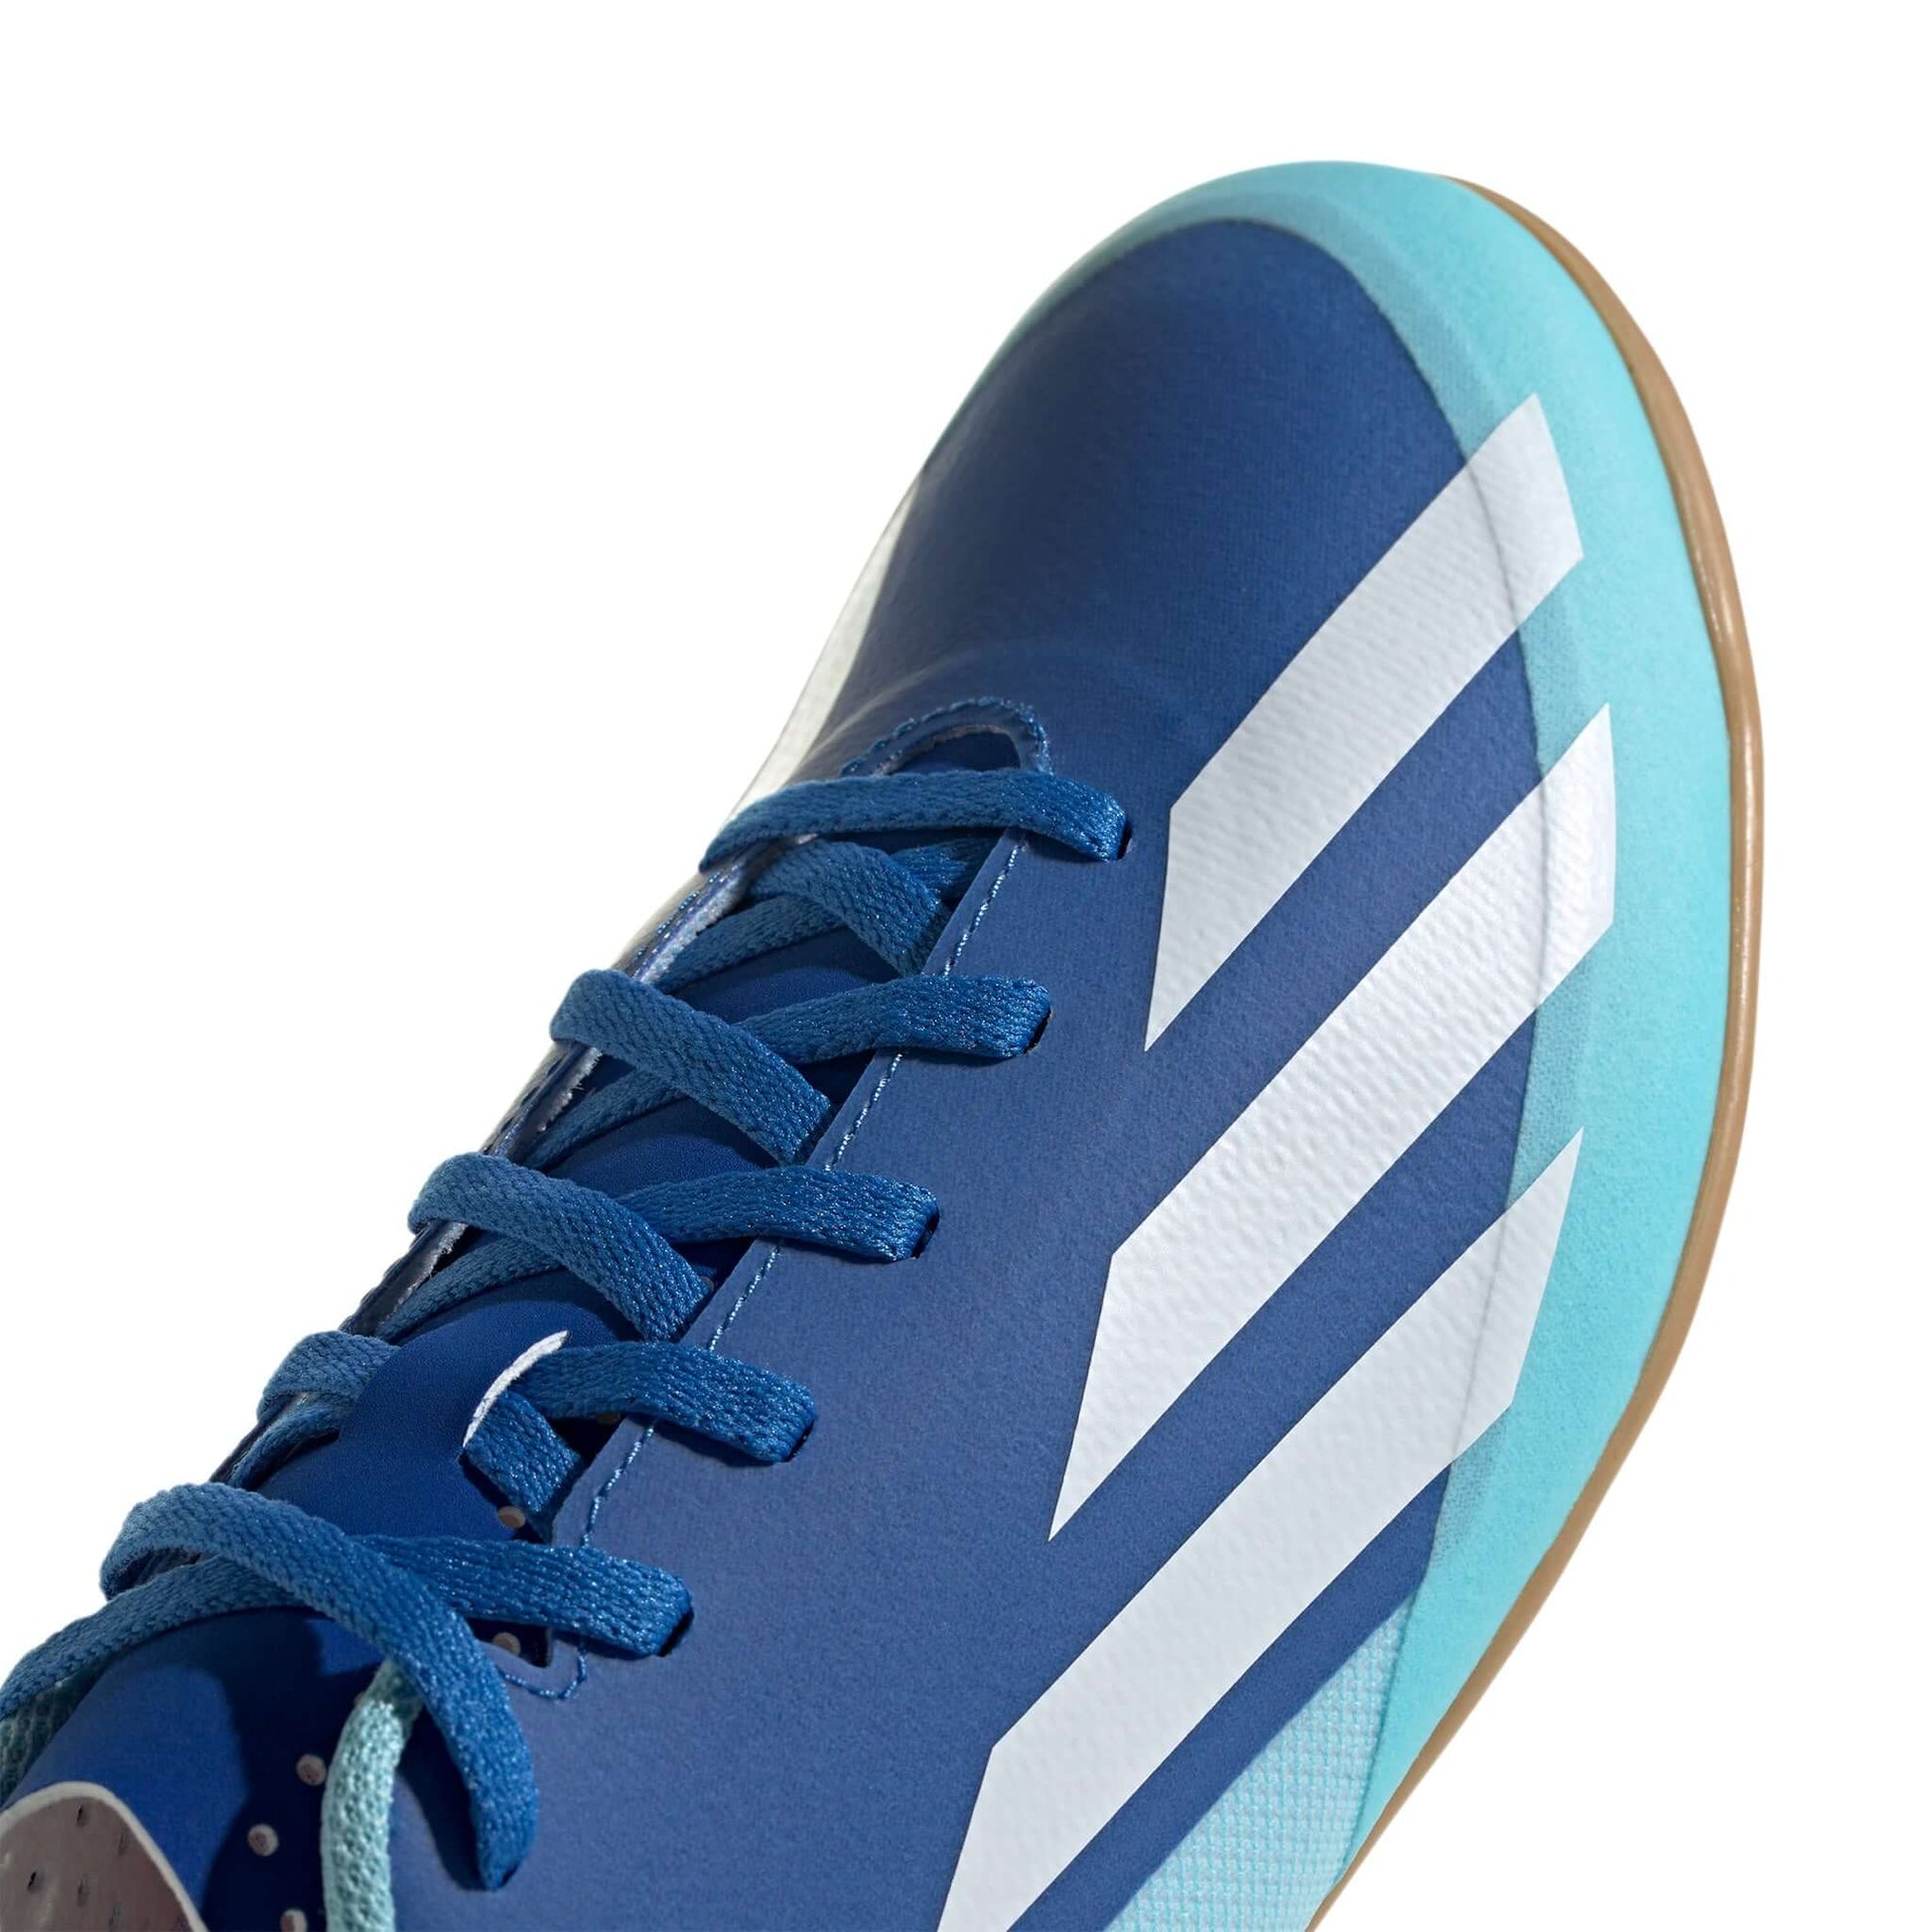 X Crazyfast.4 Indoor Soccer Shoes | EvangelistaSports.com | Canada's Premiere Soccer Store